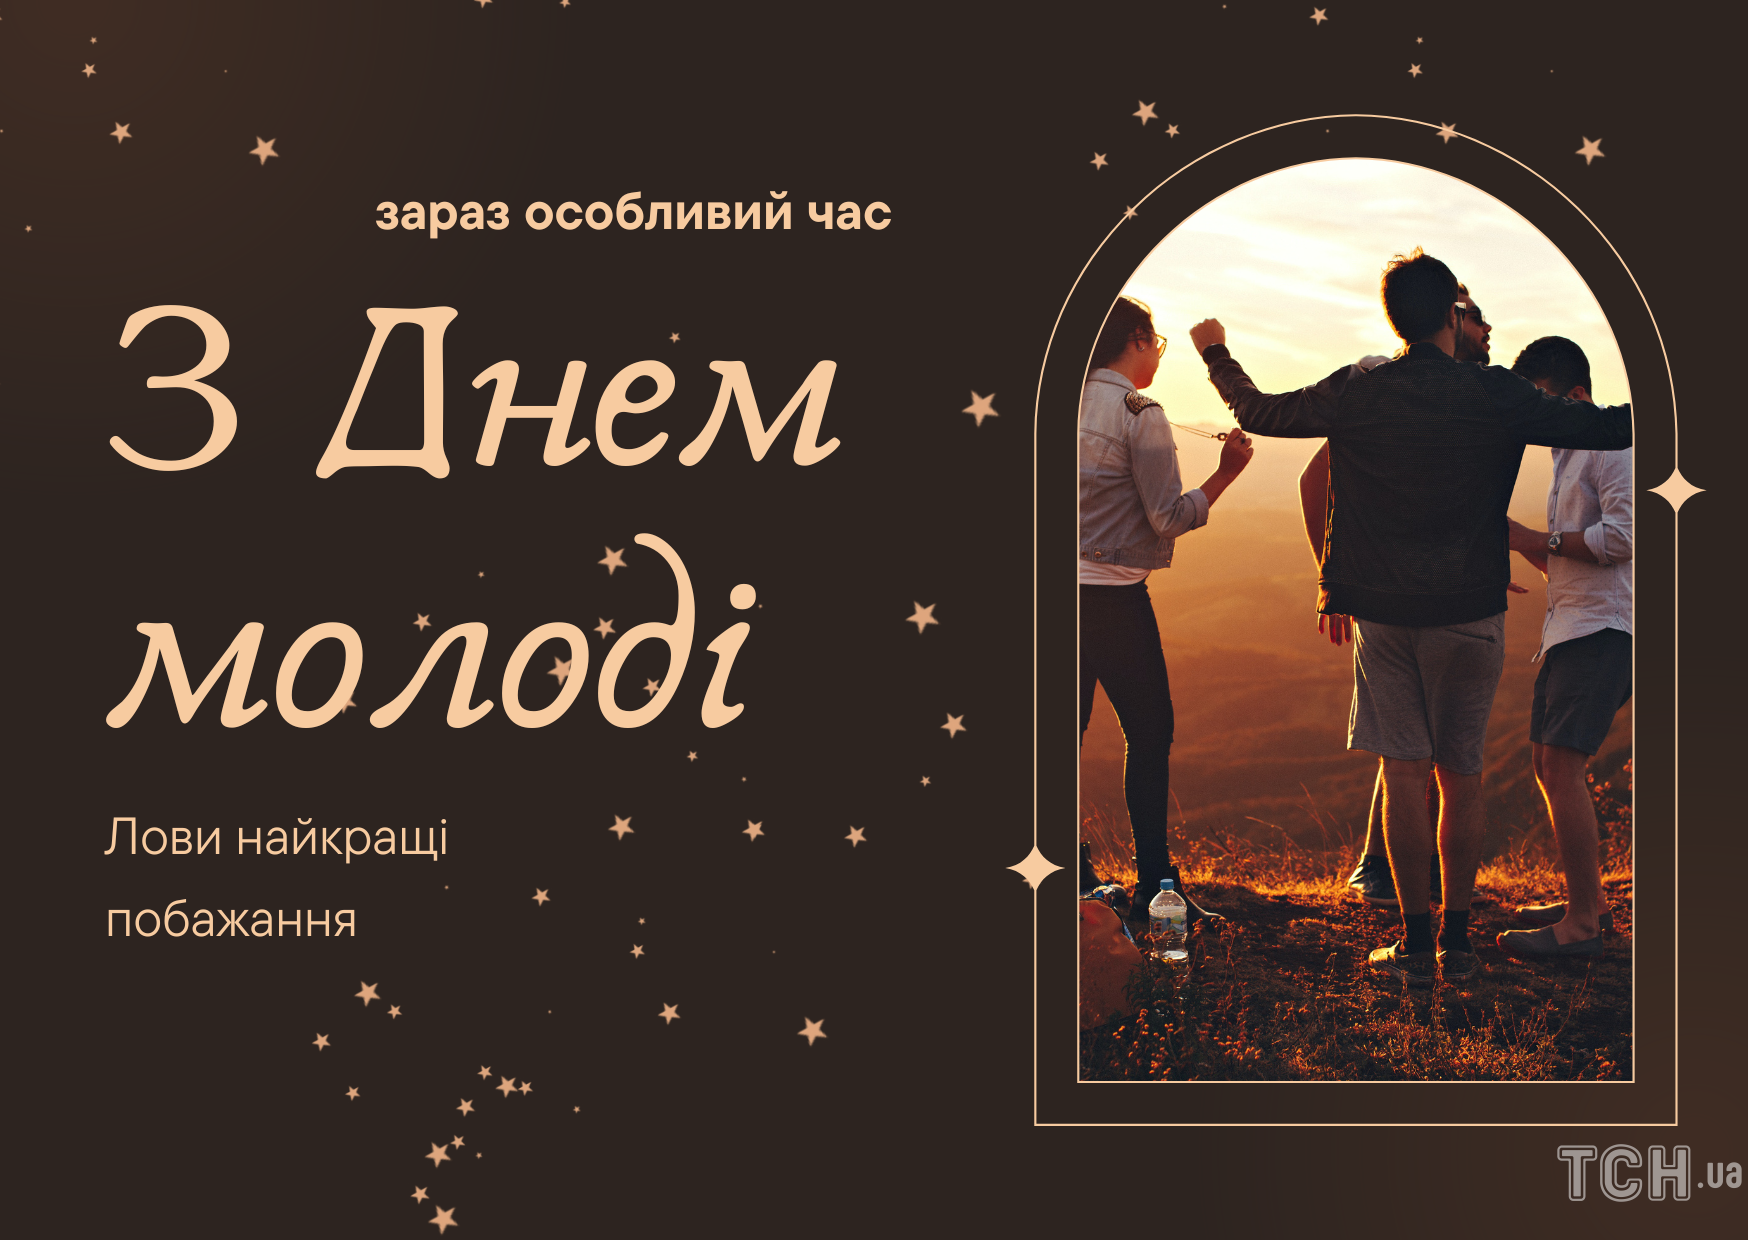 С Днем молодежи: картинки / © ТСН.ua